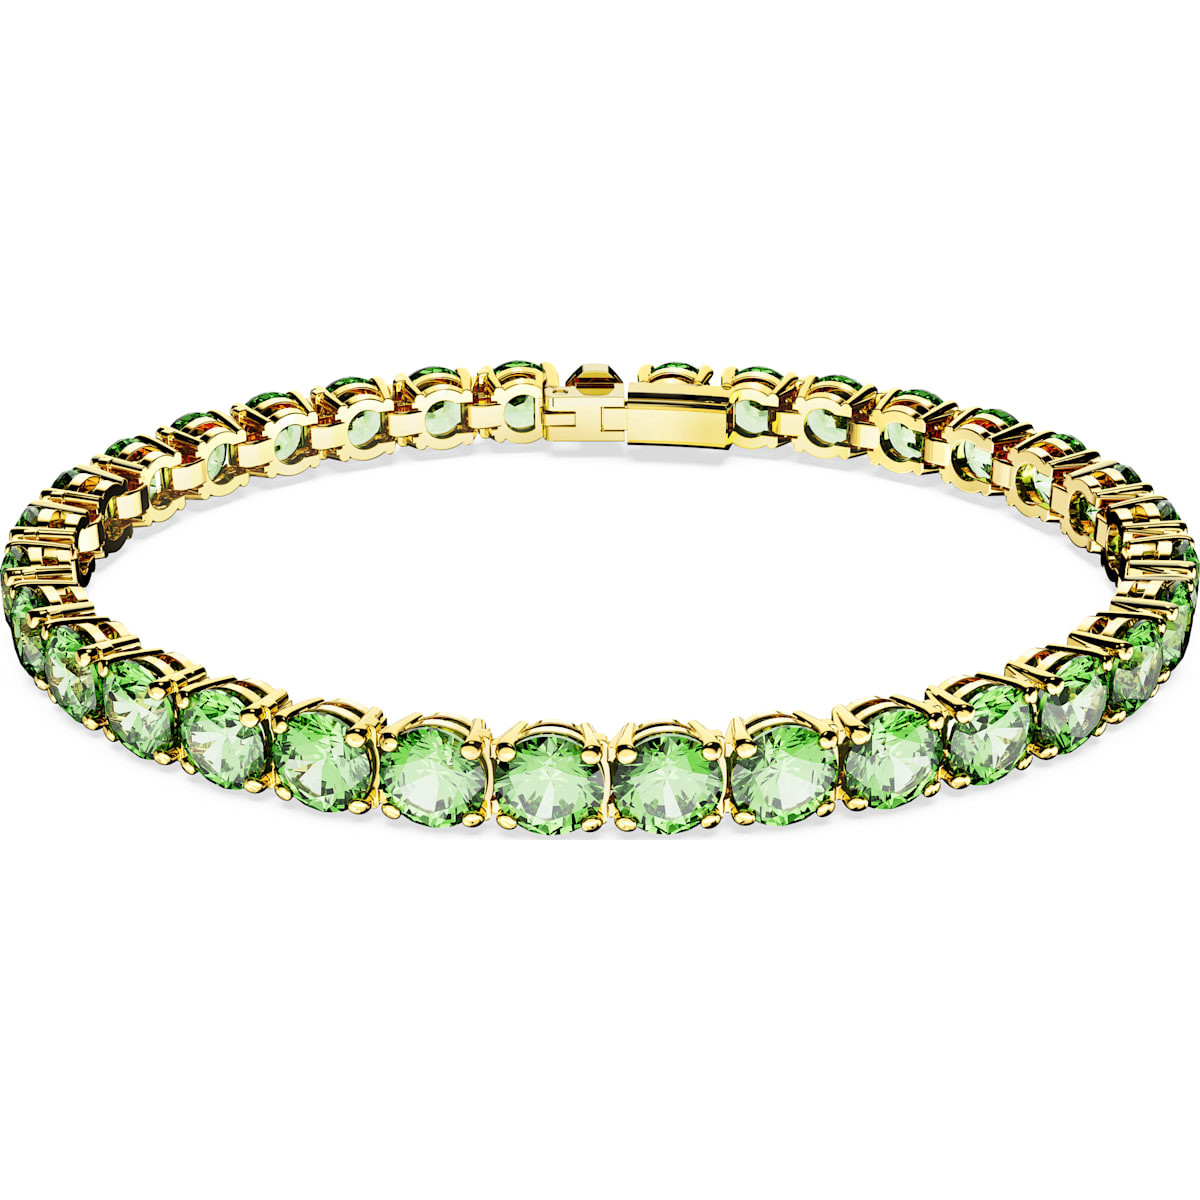 SWAROVSKI MATRIX:TENNIS BRACELET GREEN M john-franich-jewellers-nz